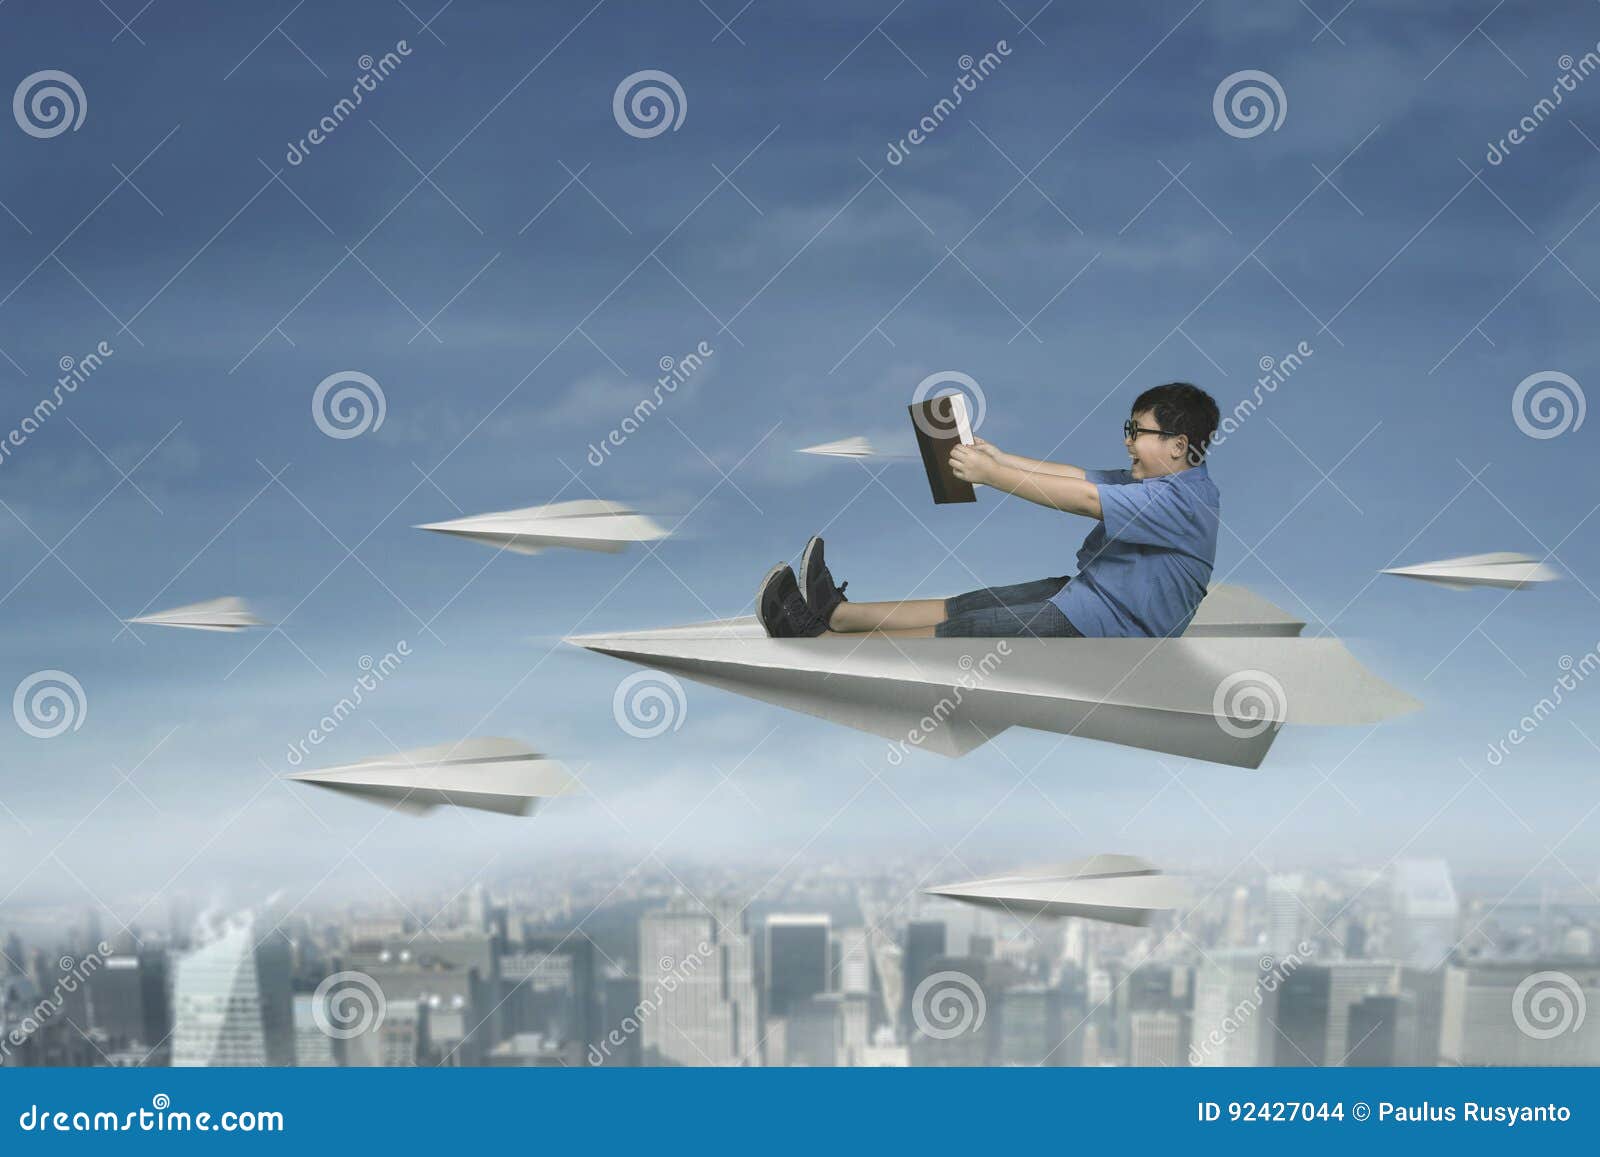 Мой бумажный самолет отправляется в полет. Бумажный самолетик летит над городом. Бумажный самолетик в городе. Студент летит. Девушка с бумажным самолетиком.